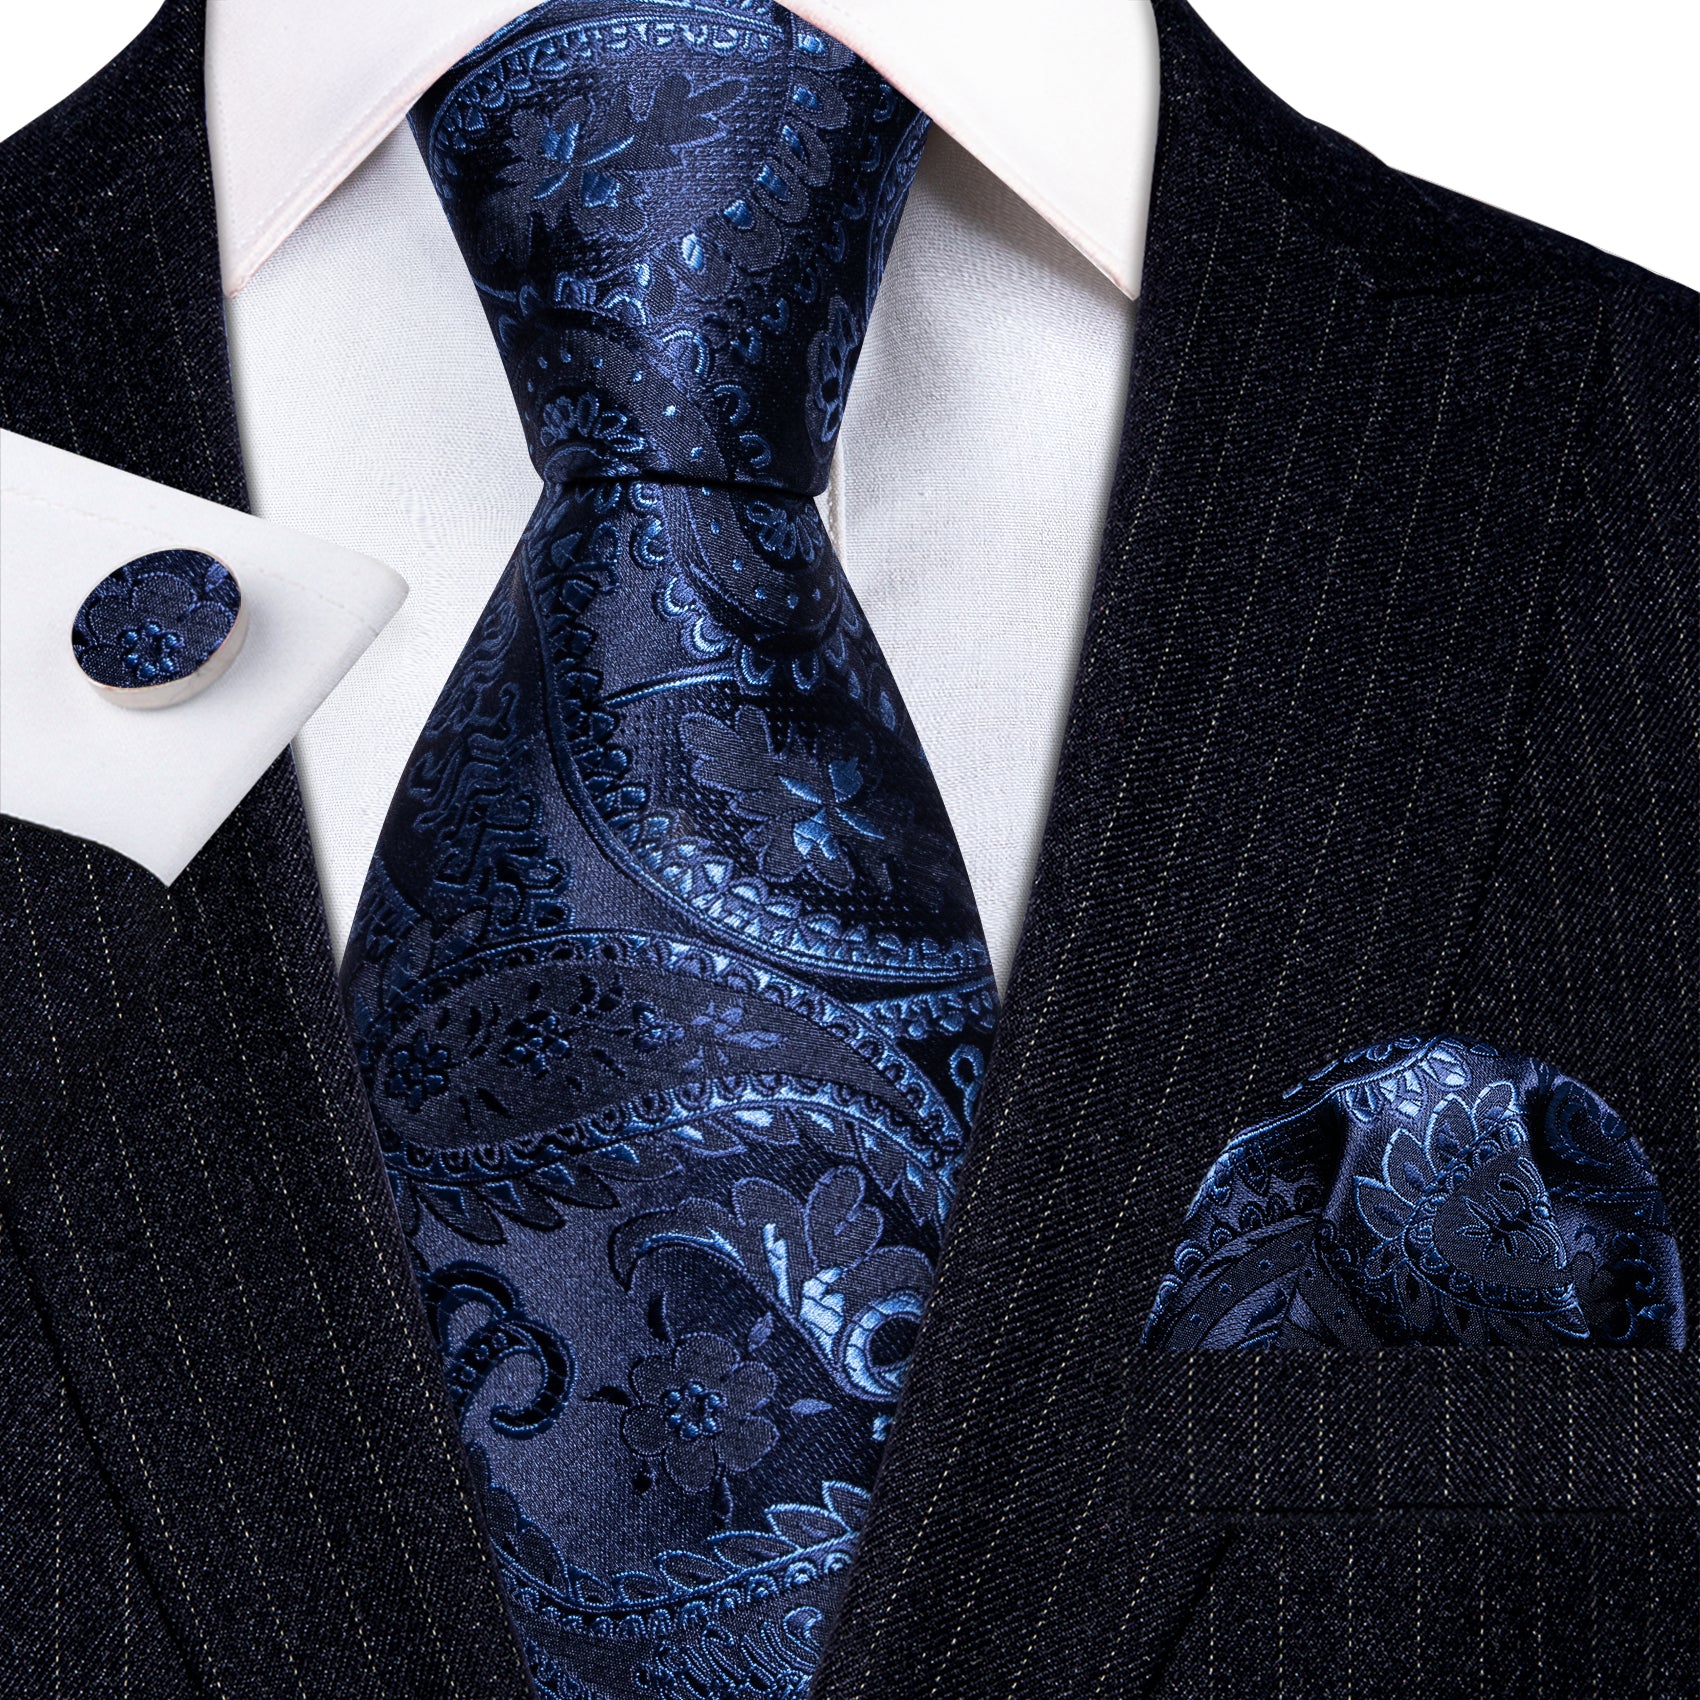 Blue Floral Silk Tie Handkerchief Cufflinks Set